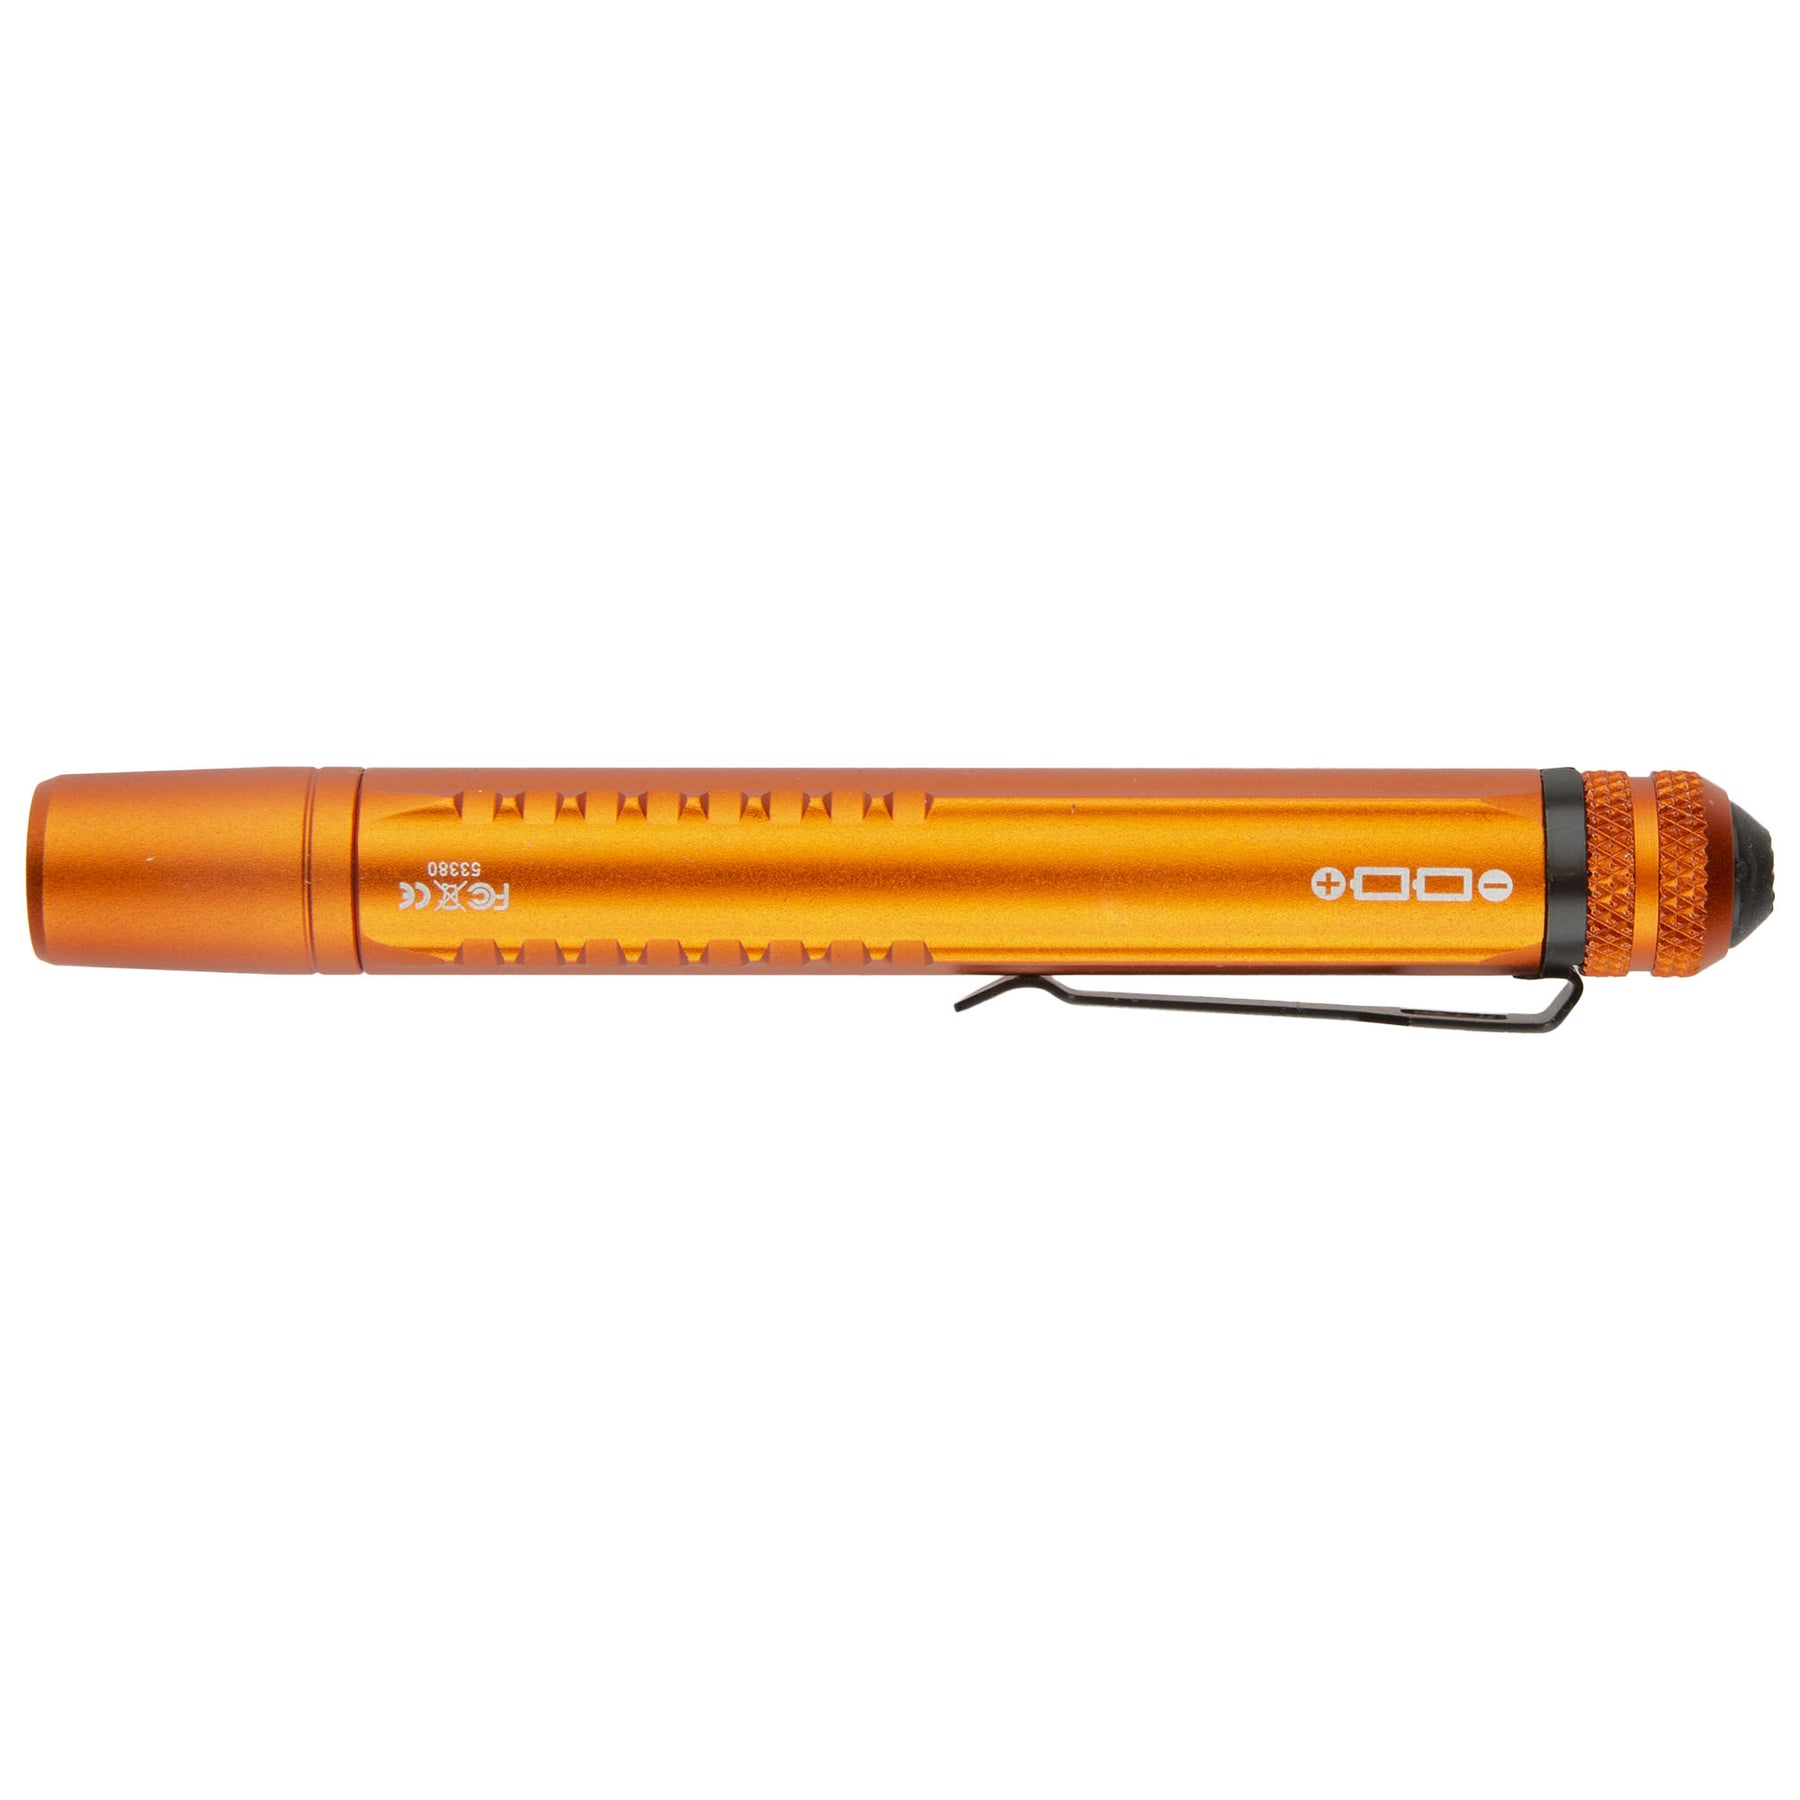 53380 - torcia tattica di 5.11 - EDC PL2AAA colorazione orange (arancione) - vista lato batterie